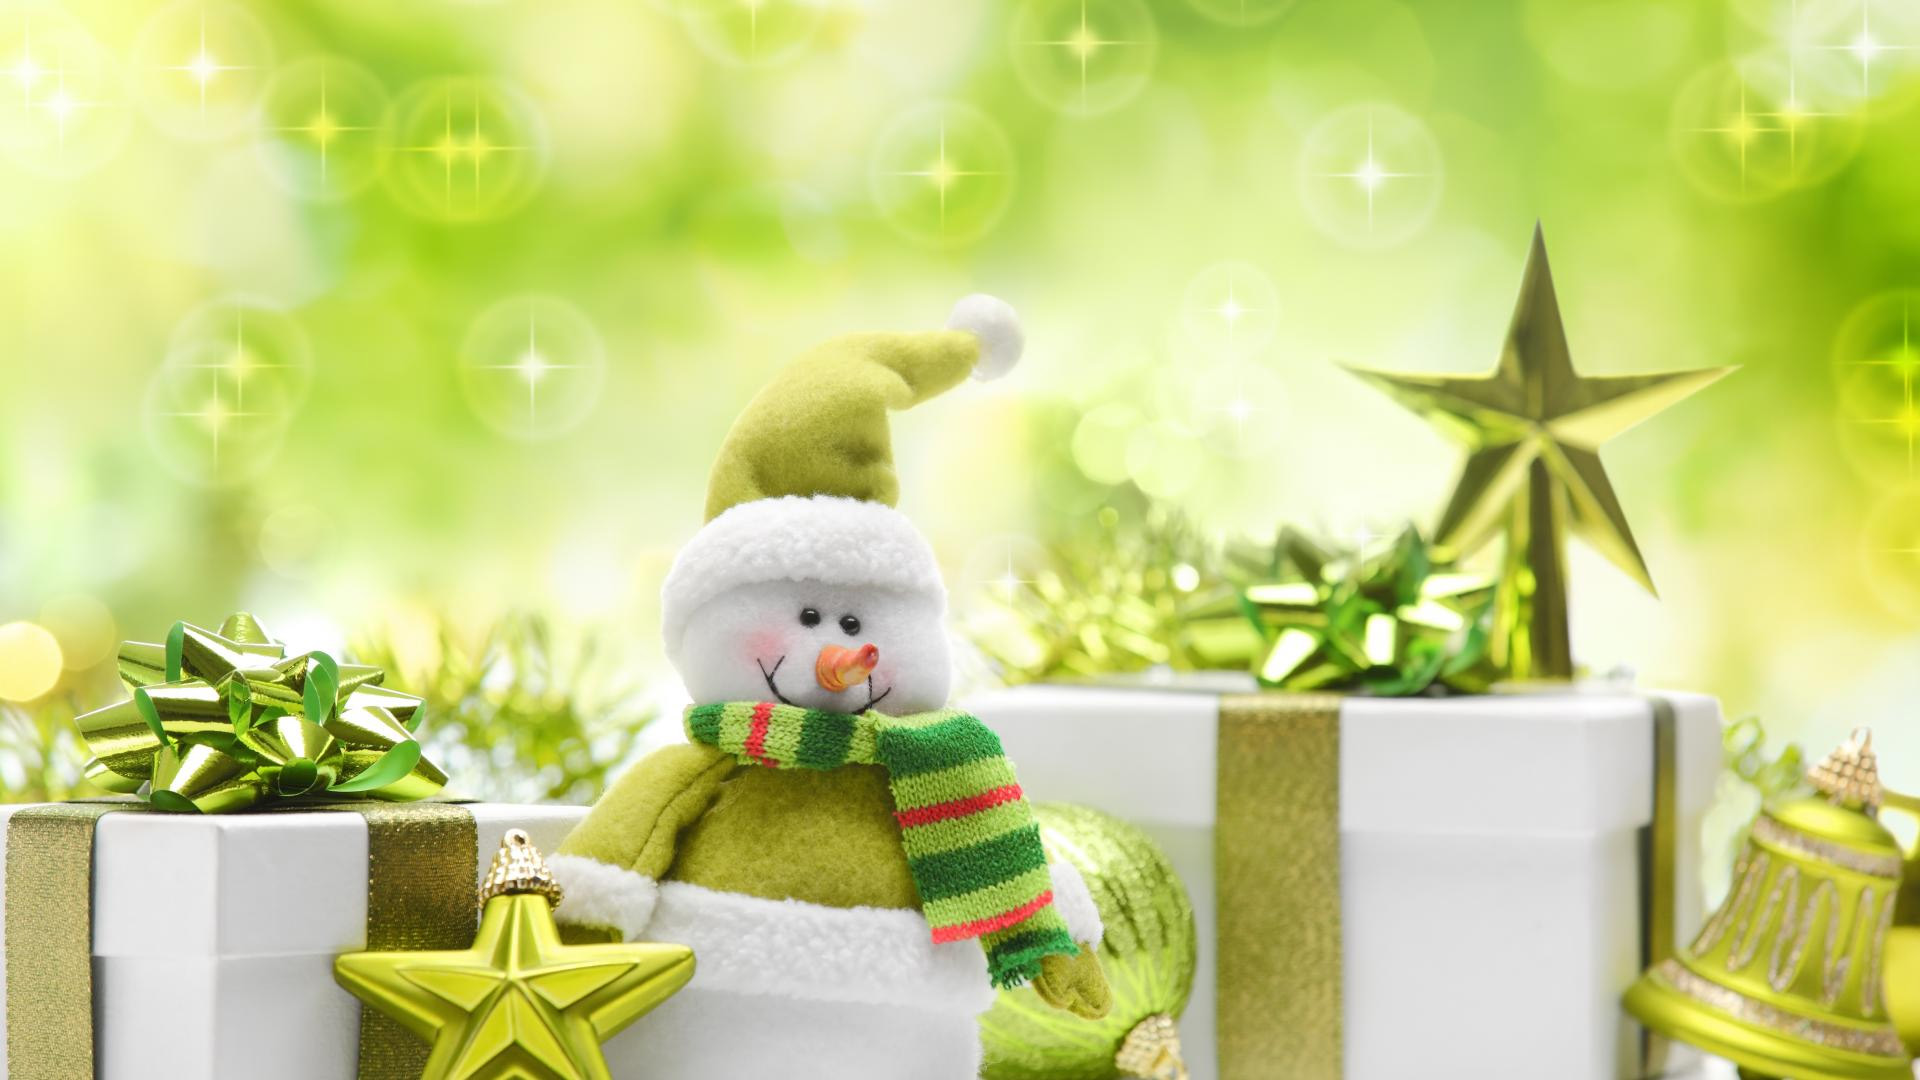 雪人,玩具,绿色圣诞节宽屏壁纸